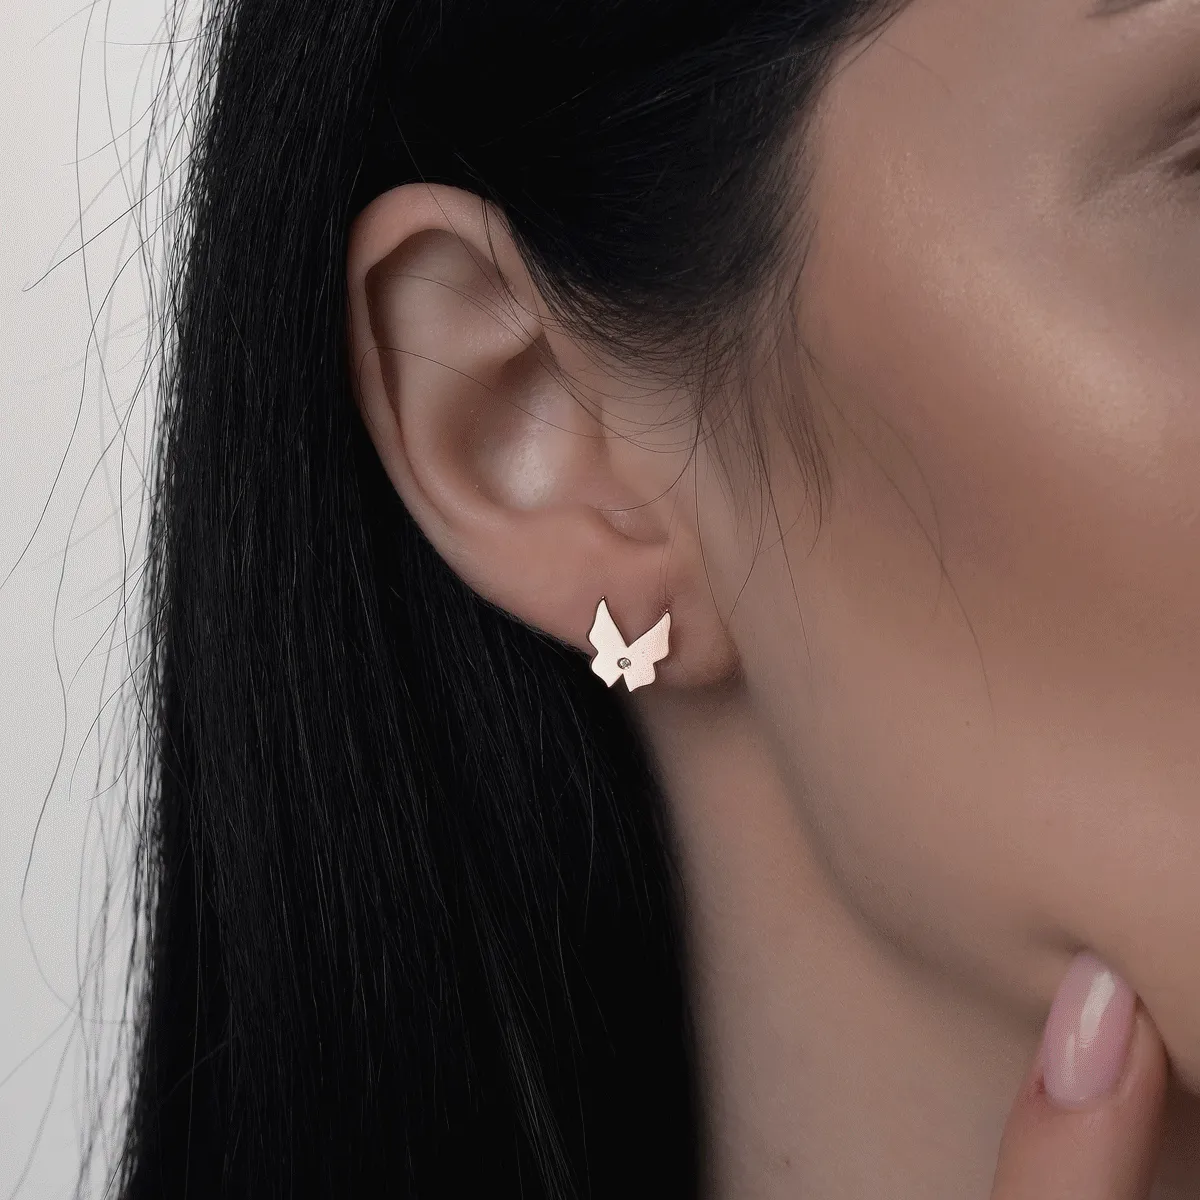 14K rose gold earrings